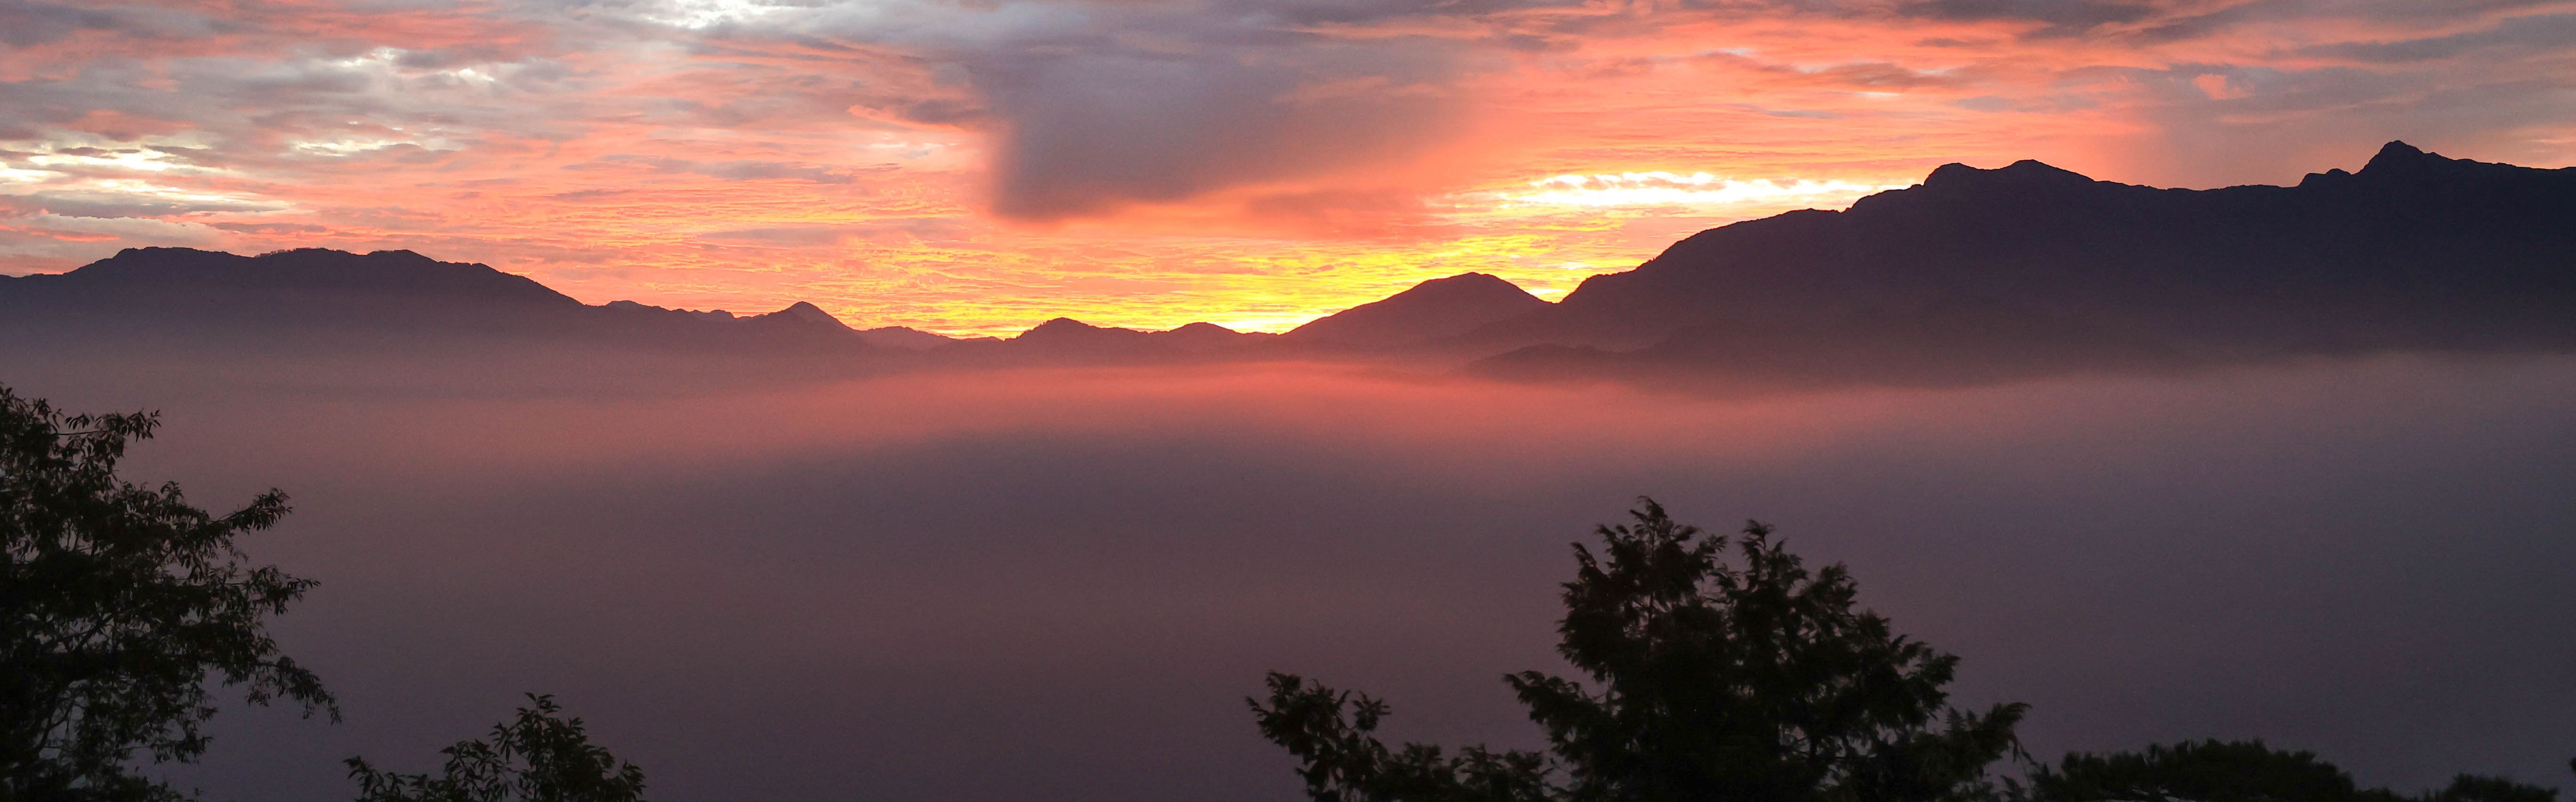 阿里山觀日 體驗大自然的瞬息萬變 想像雲霧後的神秘日出